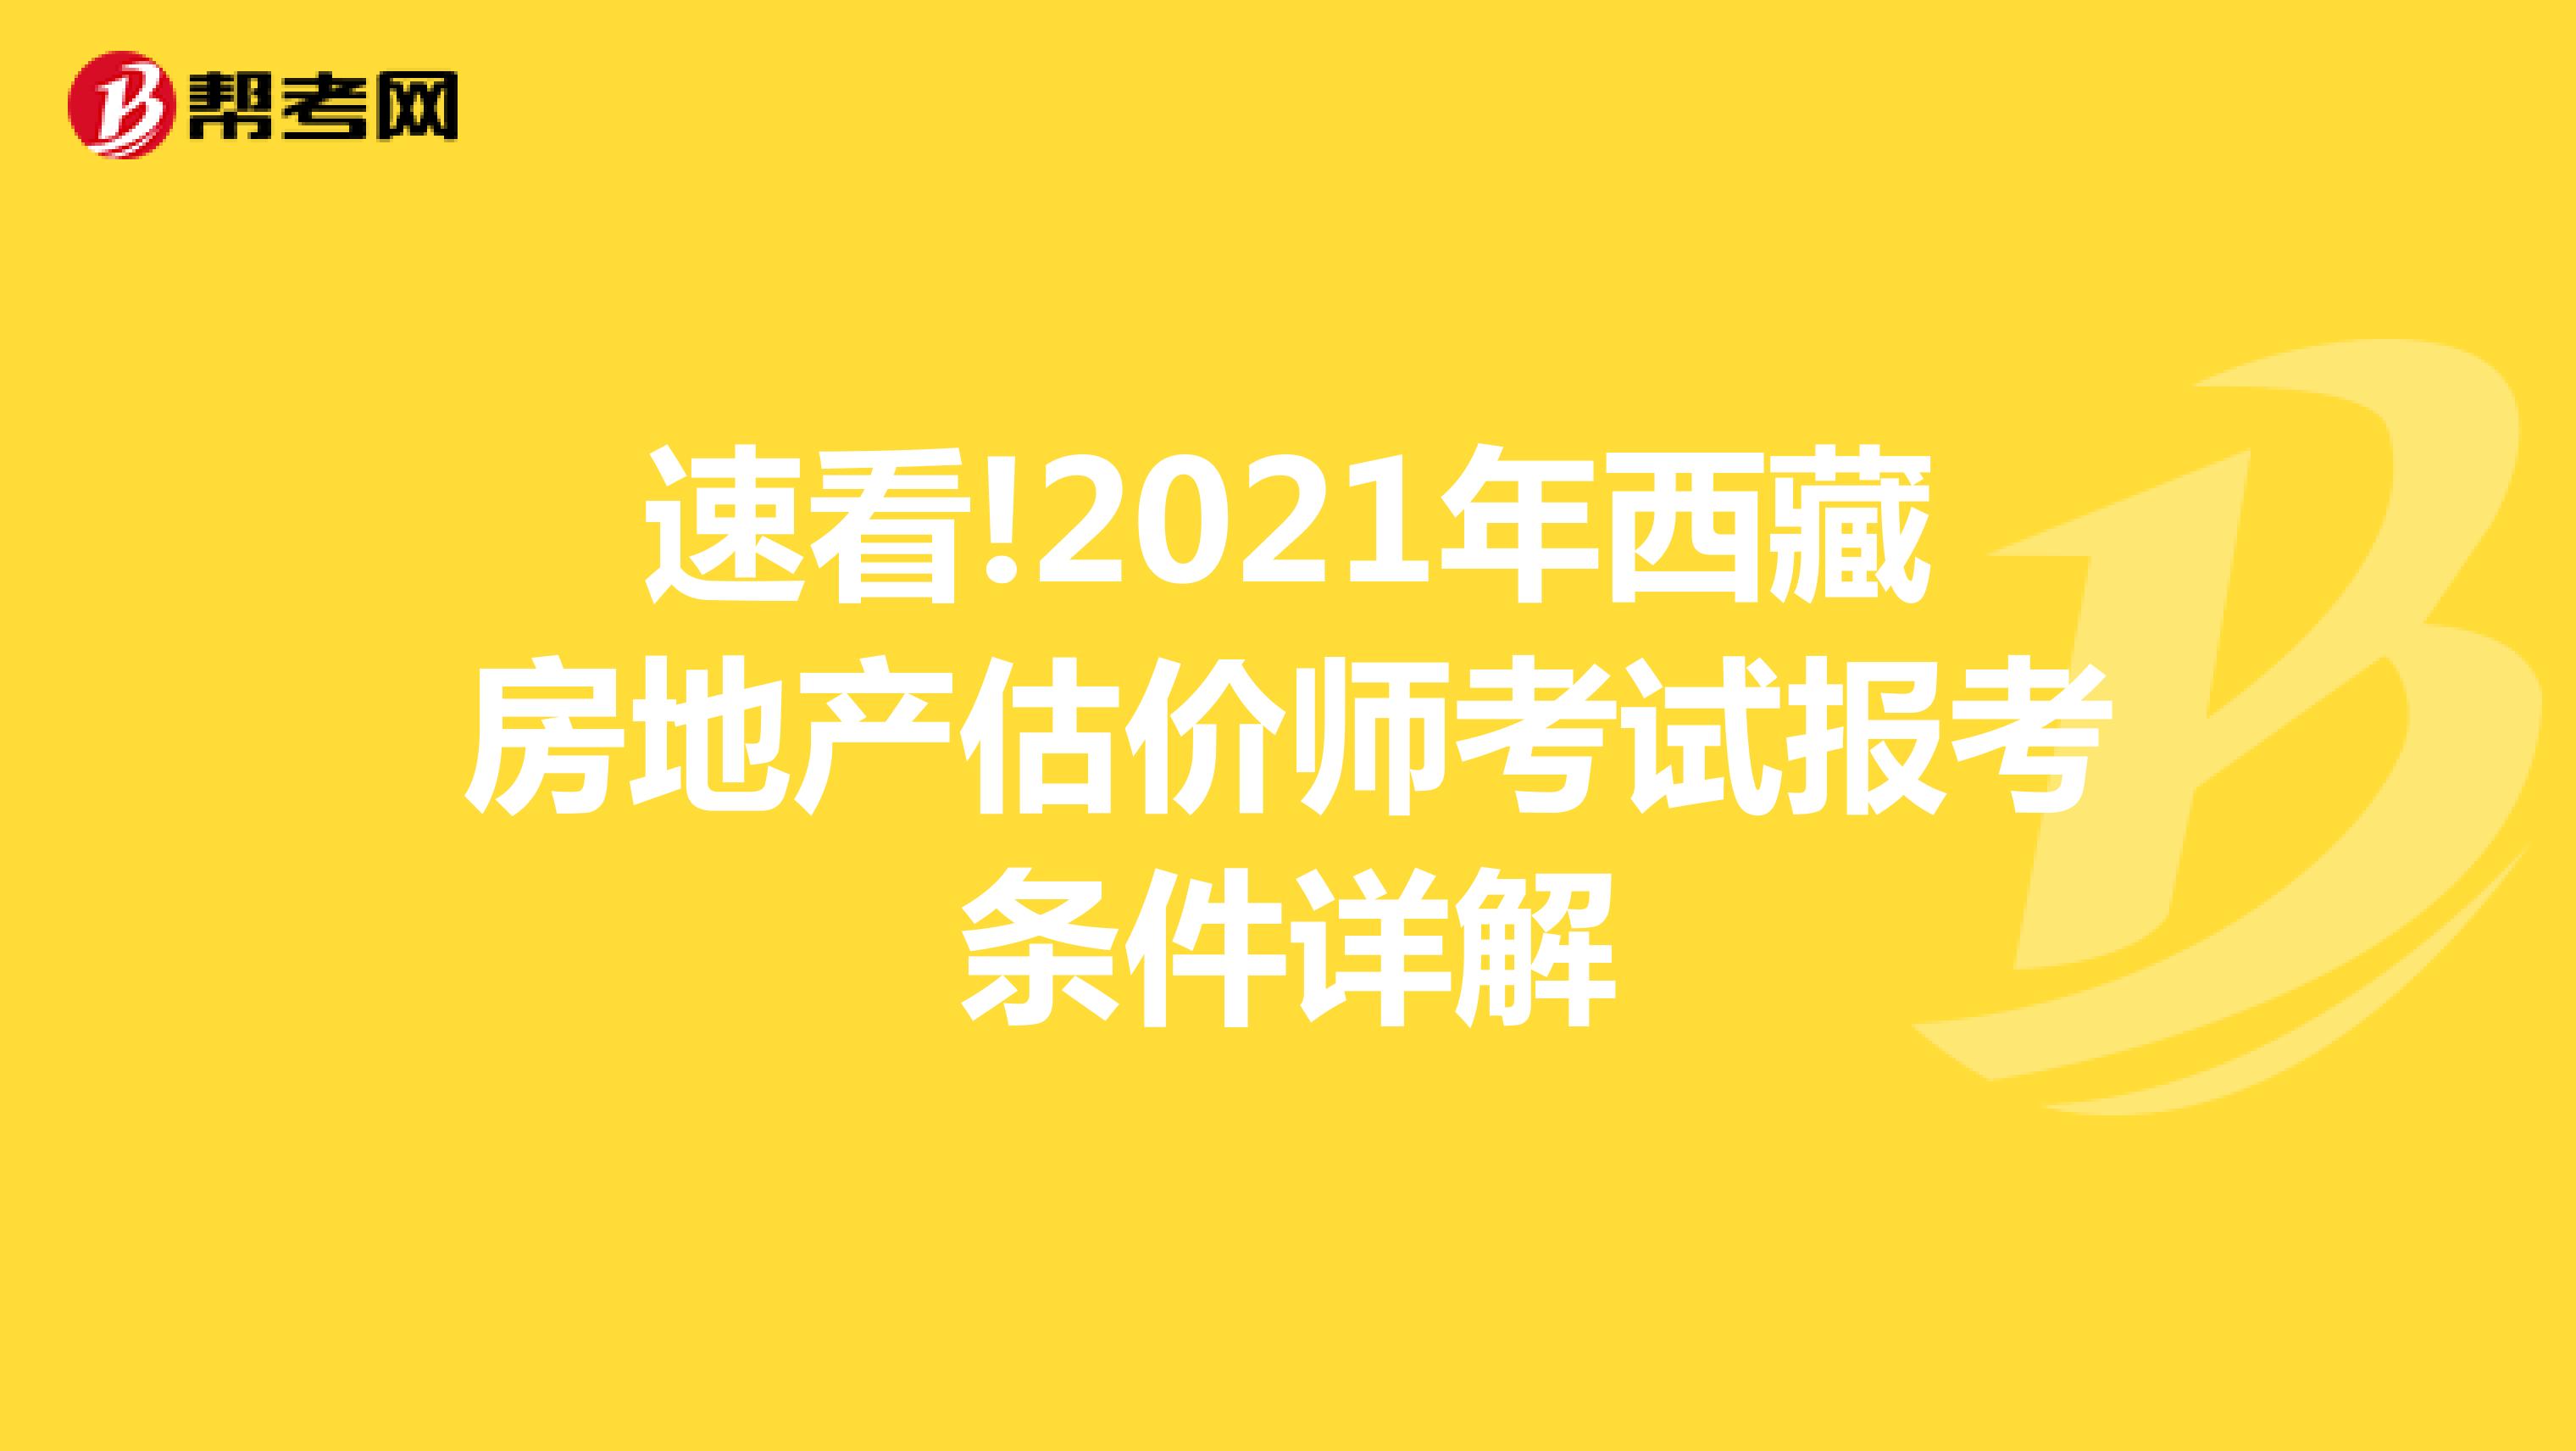 速看!2021年西藏房地产估价师考试报考条件详解